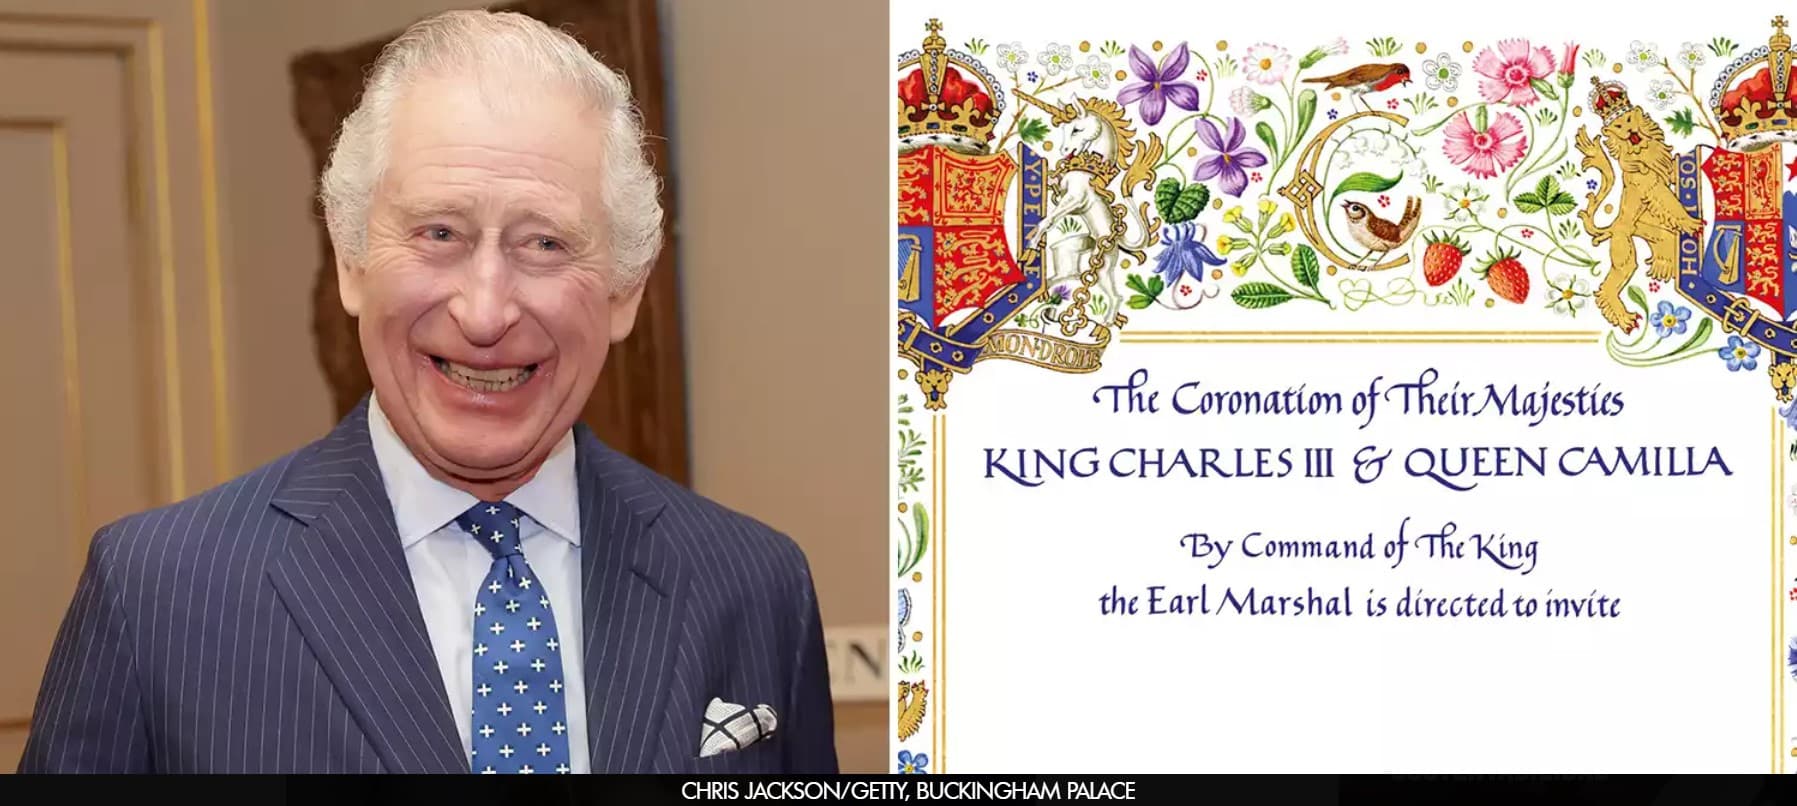 Los simbólicos mensajes secretos en la invitación de la coronación del Rey Carlos